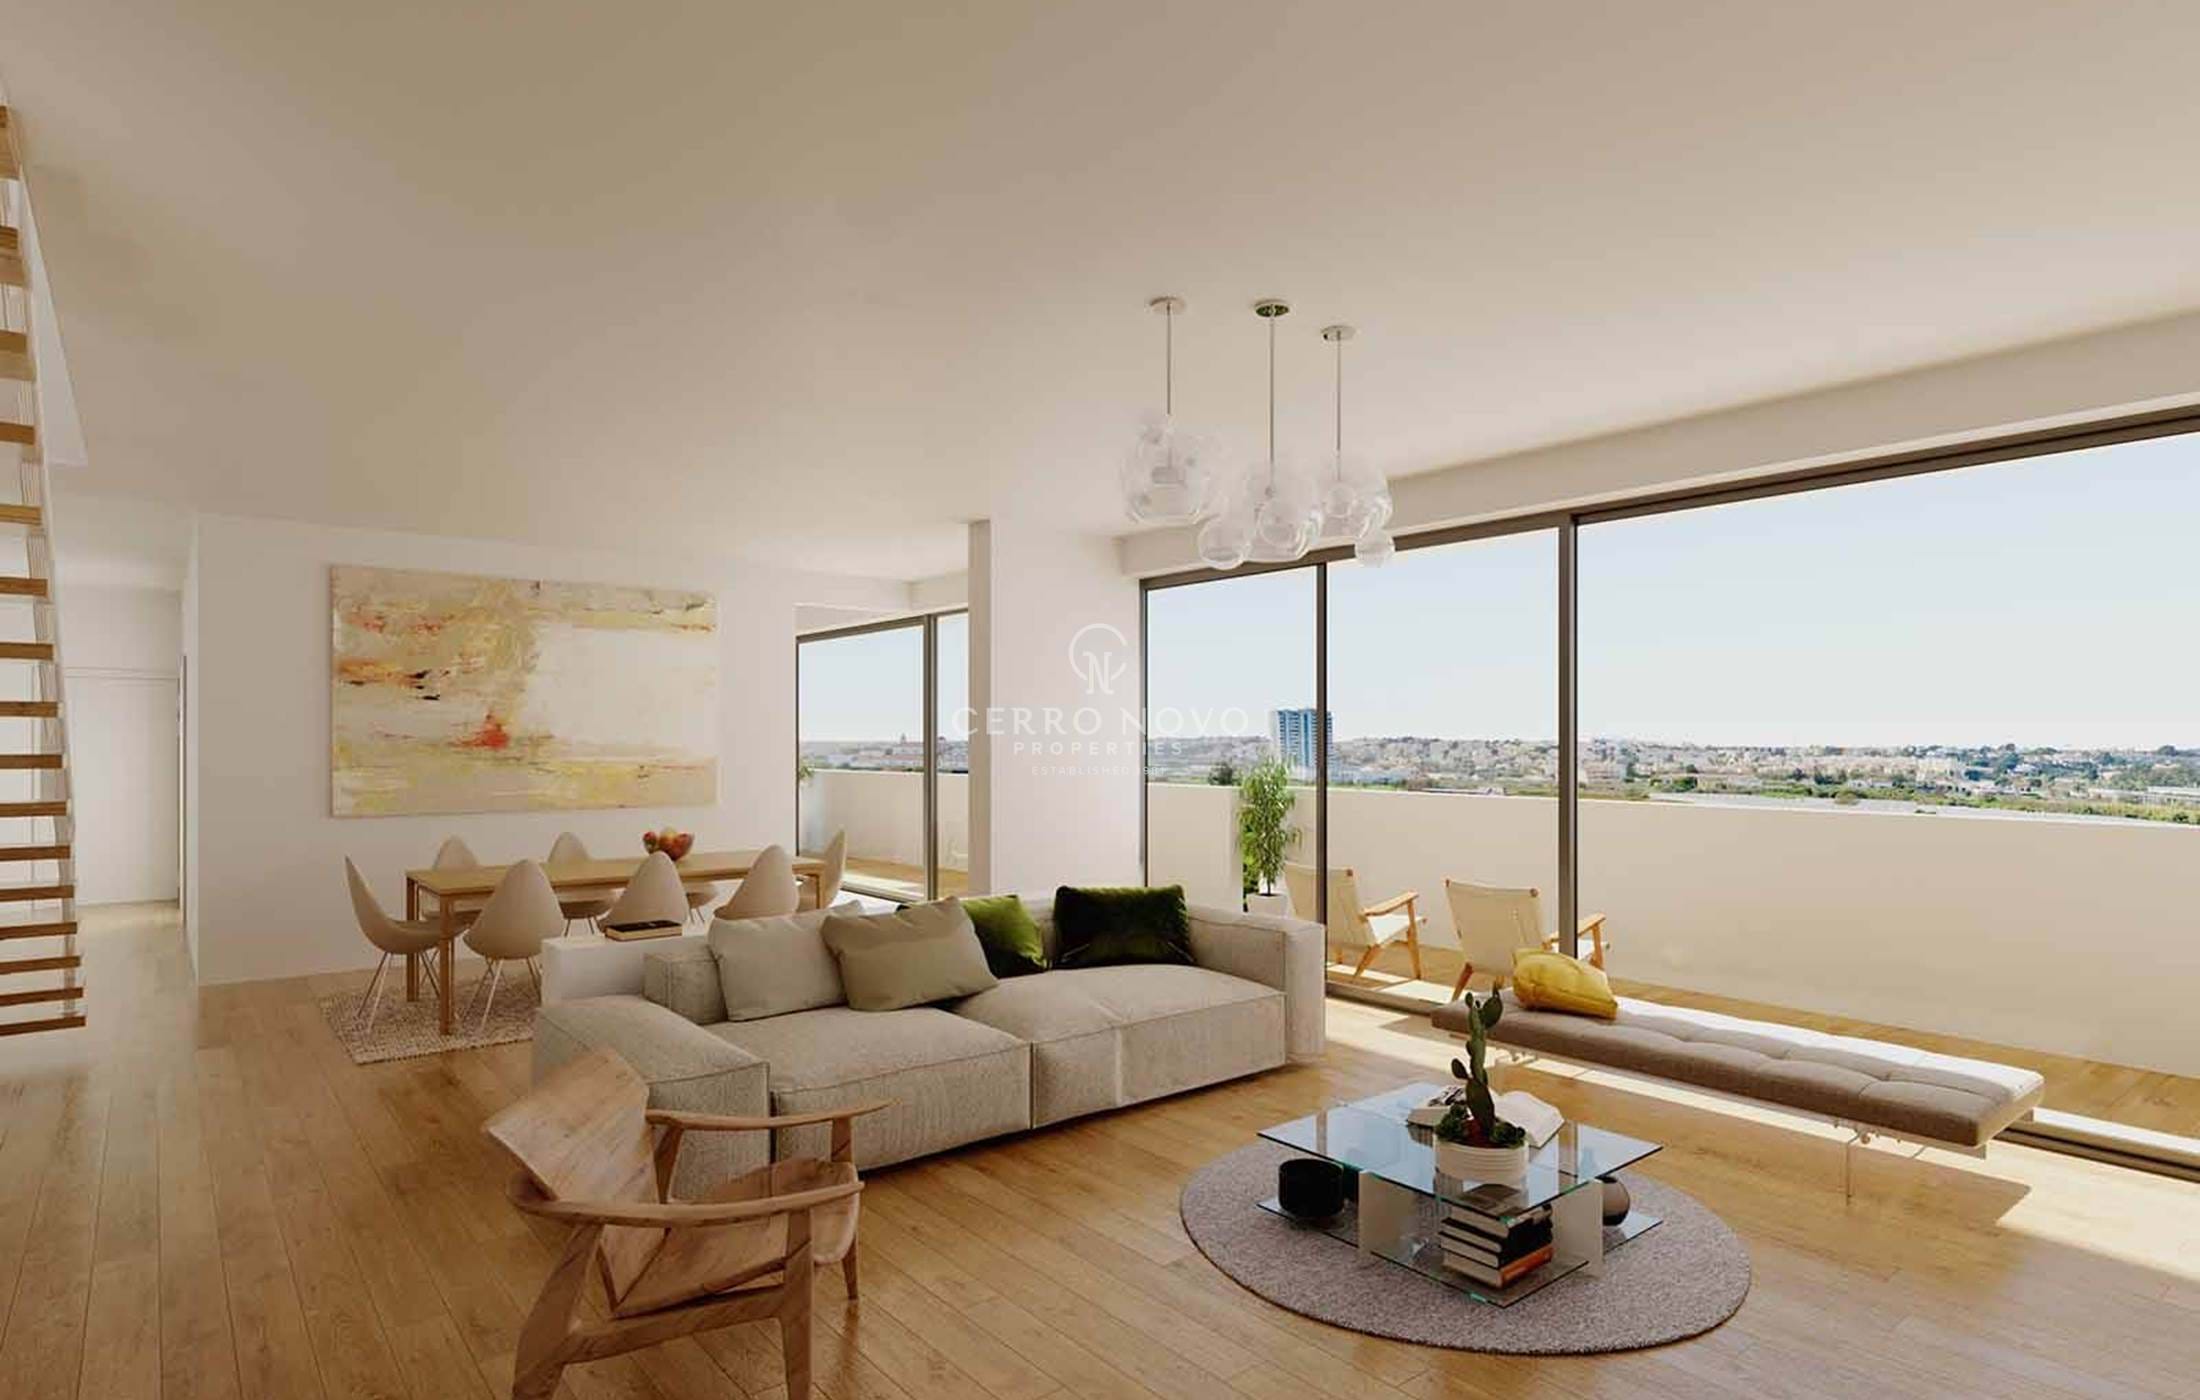 Brand new luxury apartments in exclusive condominium